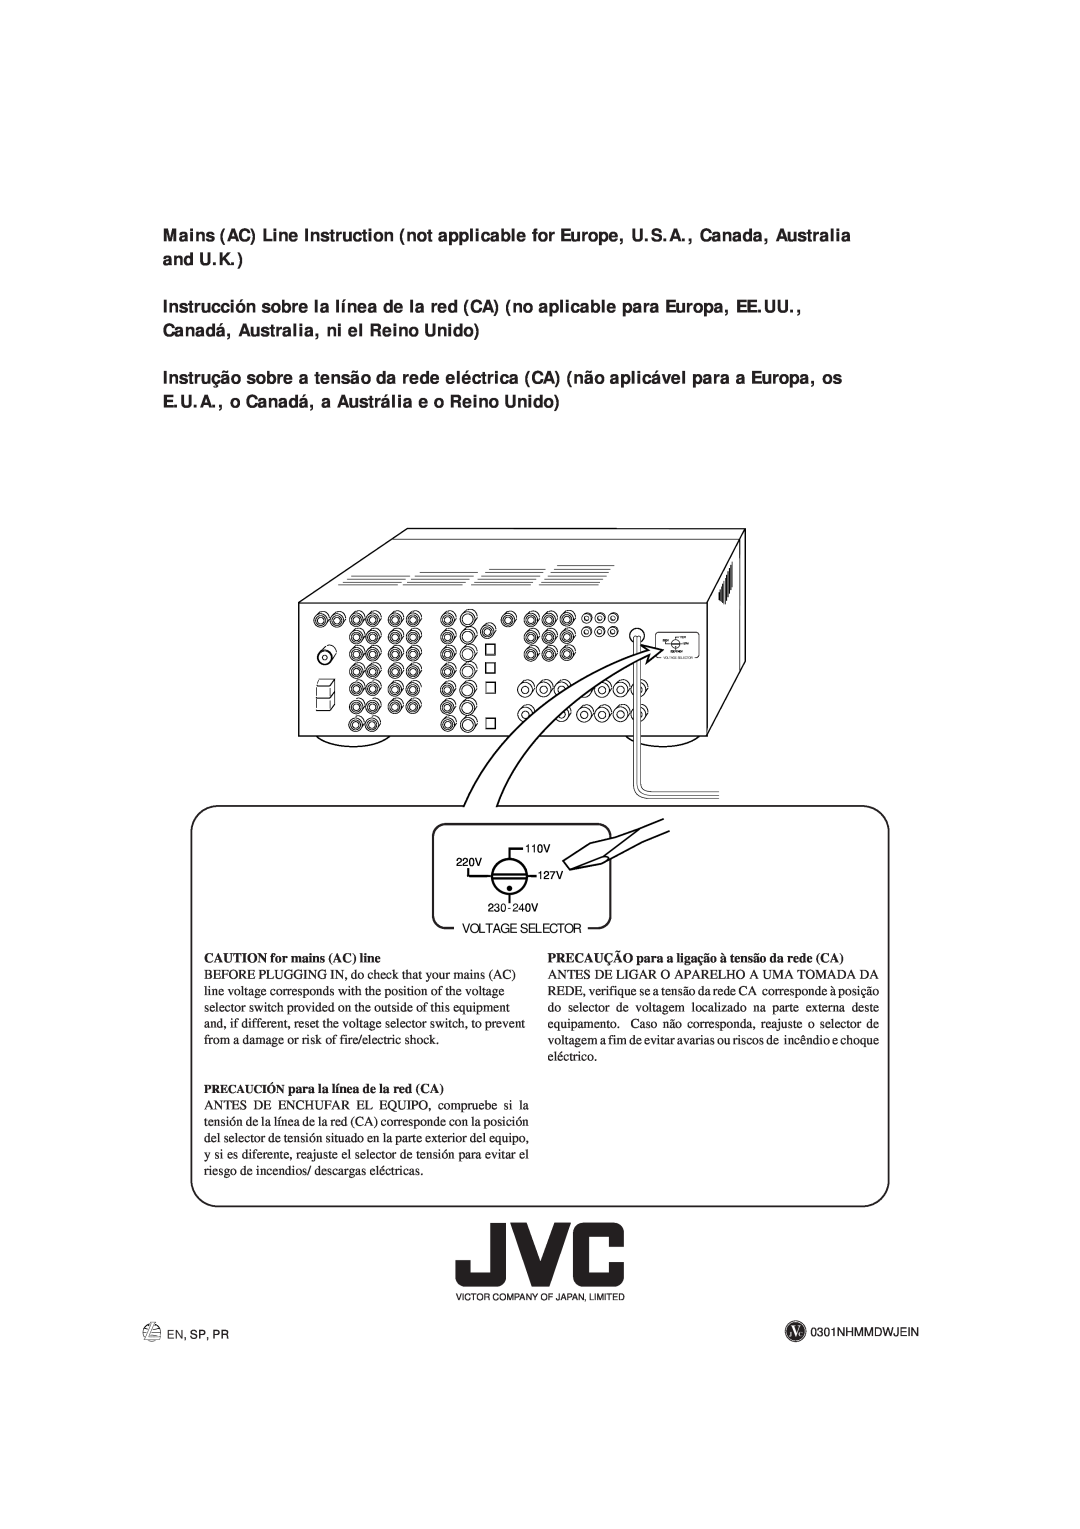 JVC RX-8012VSL manual Voltage Selector, CAUTION for mains AC line, PRECAUÇÃO para a ligação à tensão da rede CA 